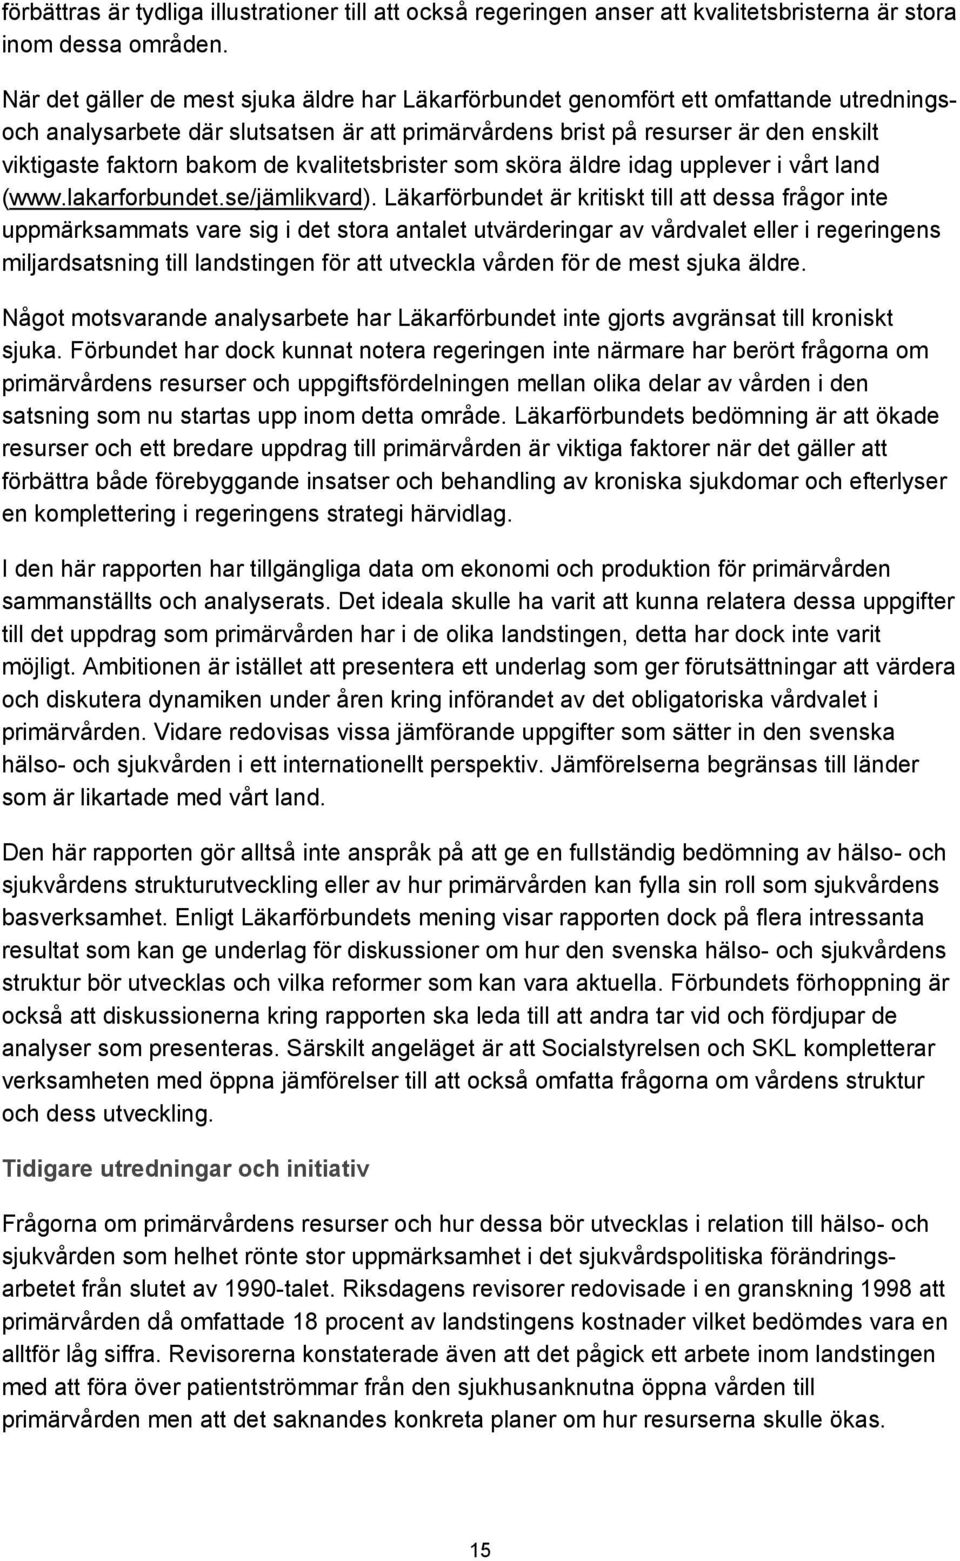 de kvalitetsbrister som sköra äldre idag upplever i vårt land (www.lakarforbundet.se/jämlikvard).